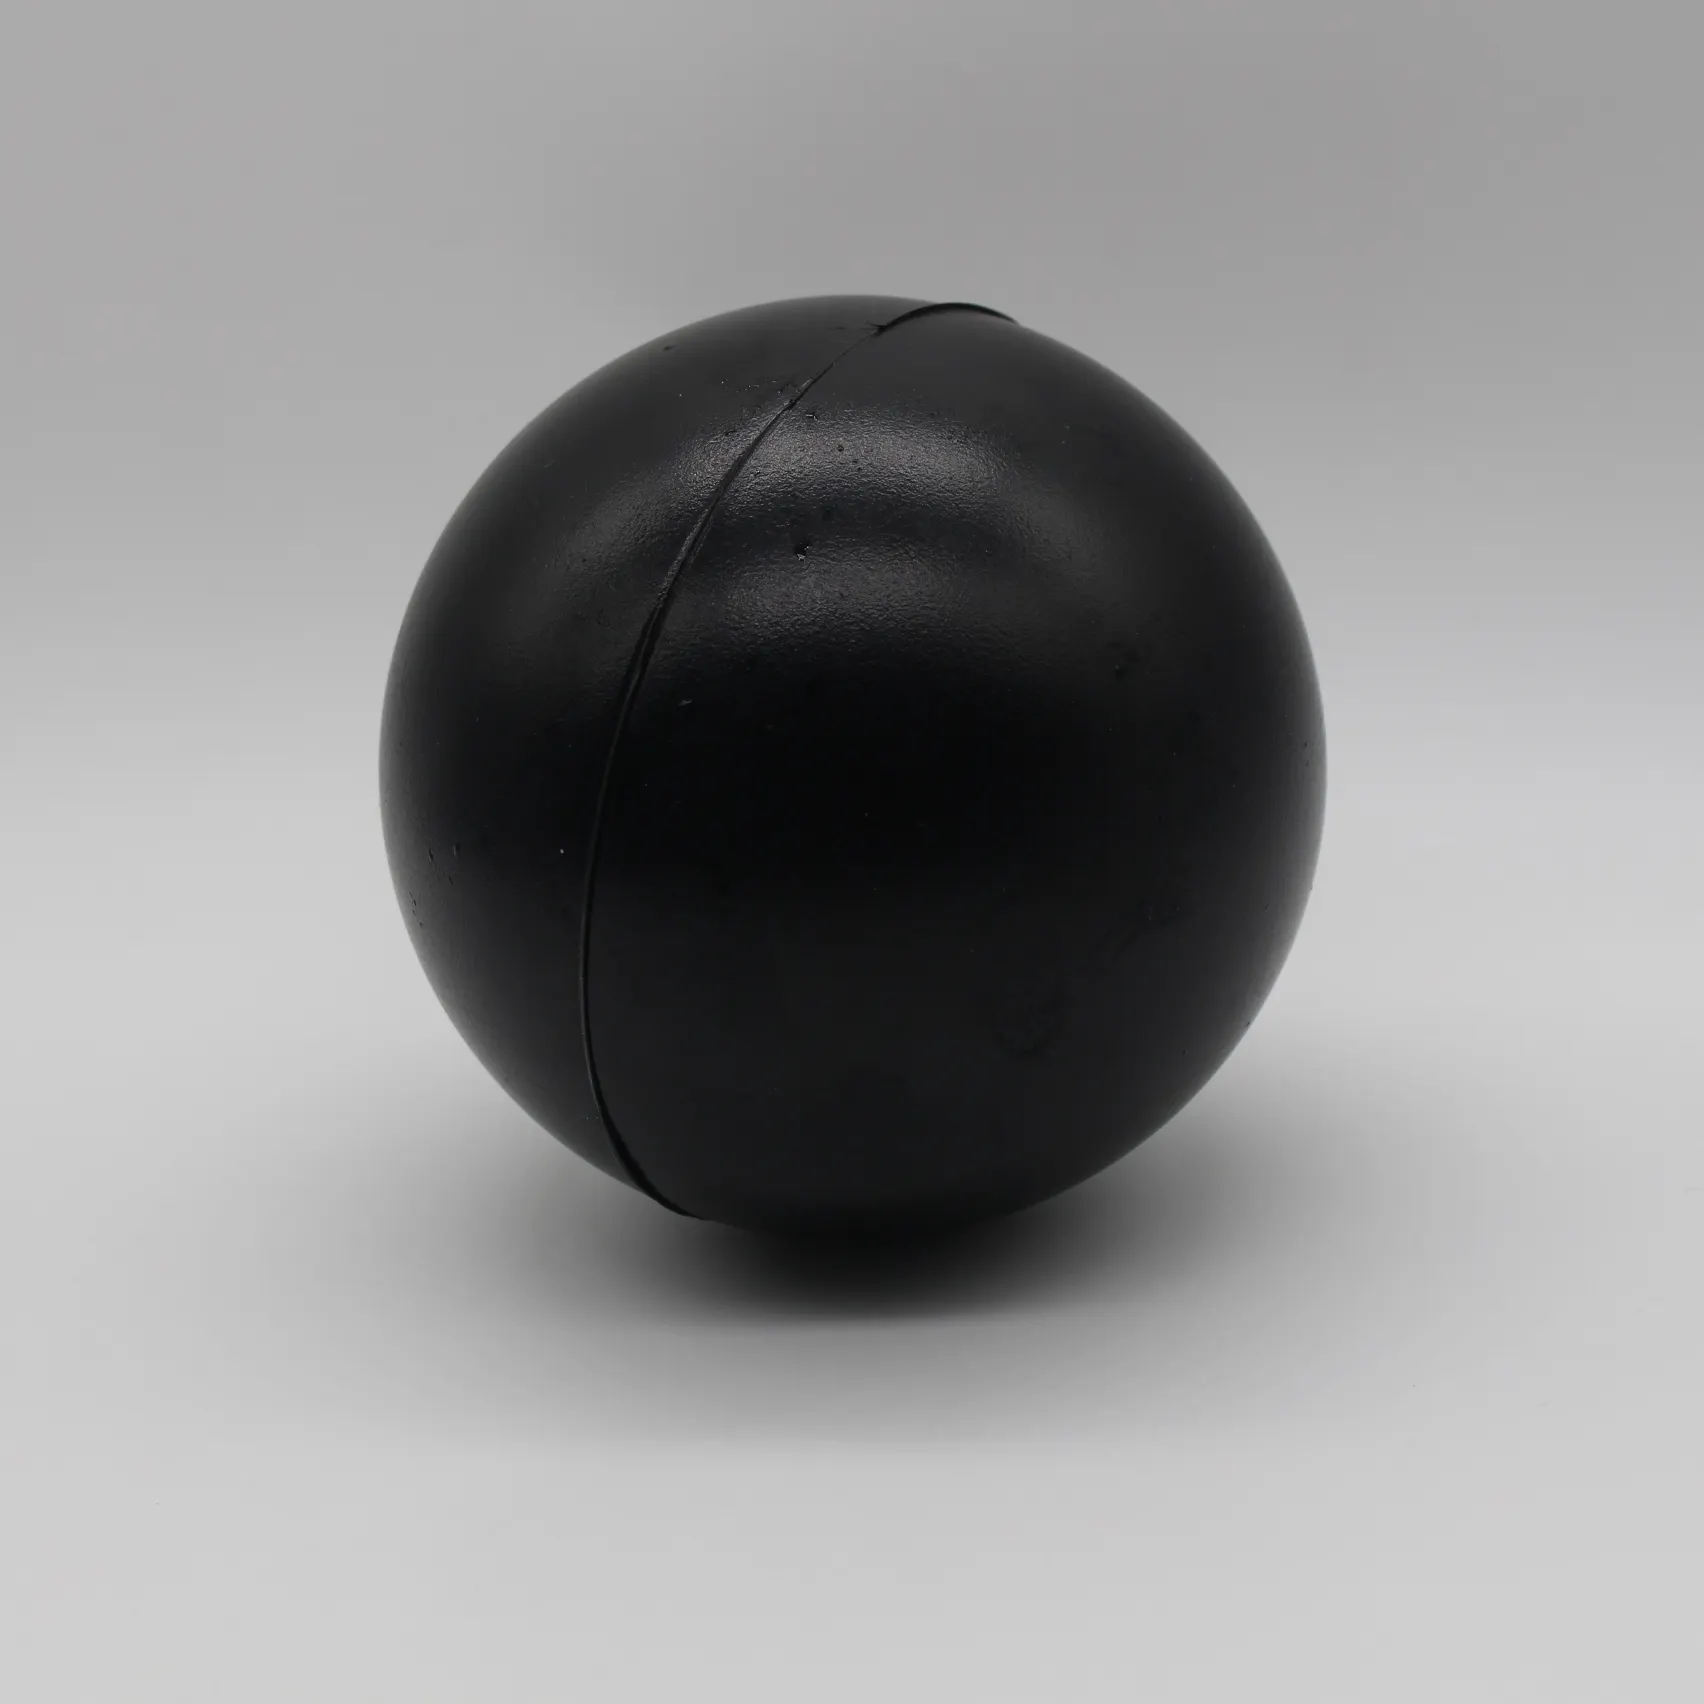 सस्ती प्लास्टिक गेंदों 4 "hdpe 100 मिमी प्लास्टिक फ्लोटिंग खोखले बॉल 10 सेमी प्लास्टिक फ्लोटिंग शेड बॉल ब्लैक शेडिंग बॉल